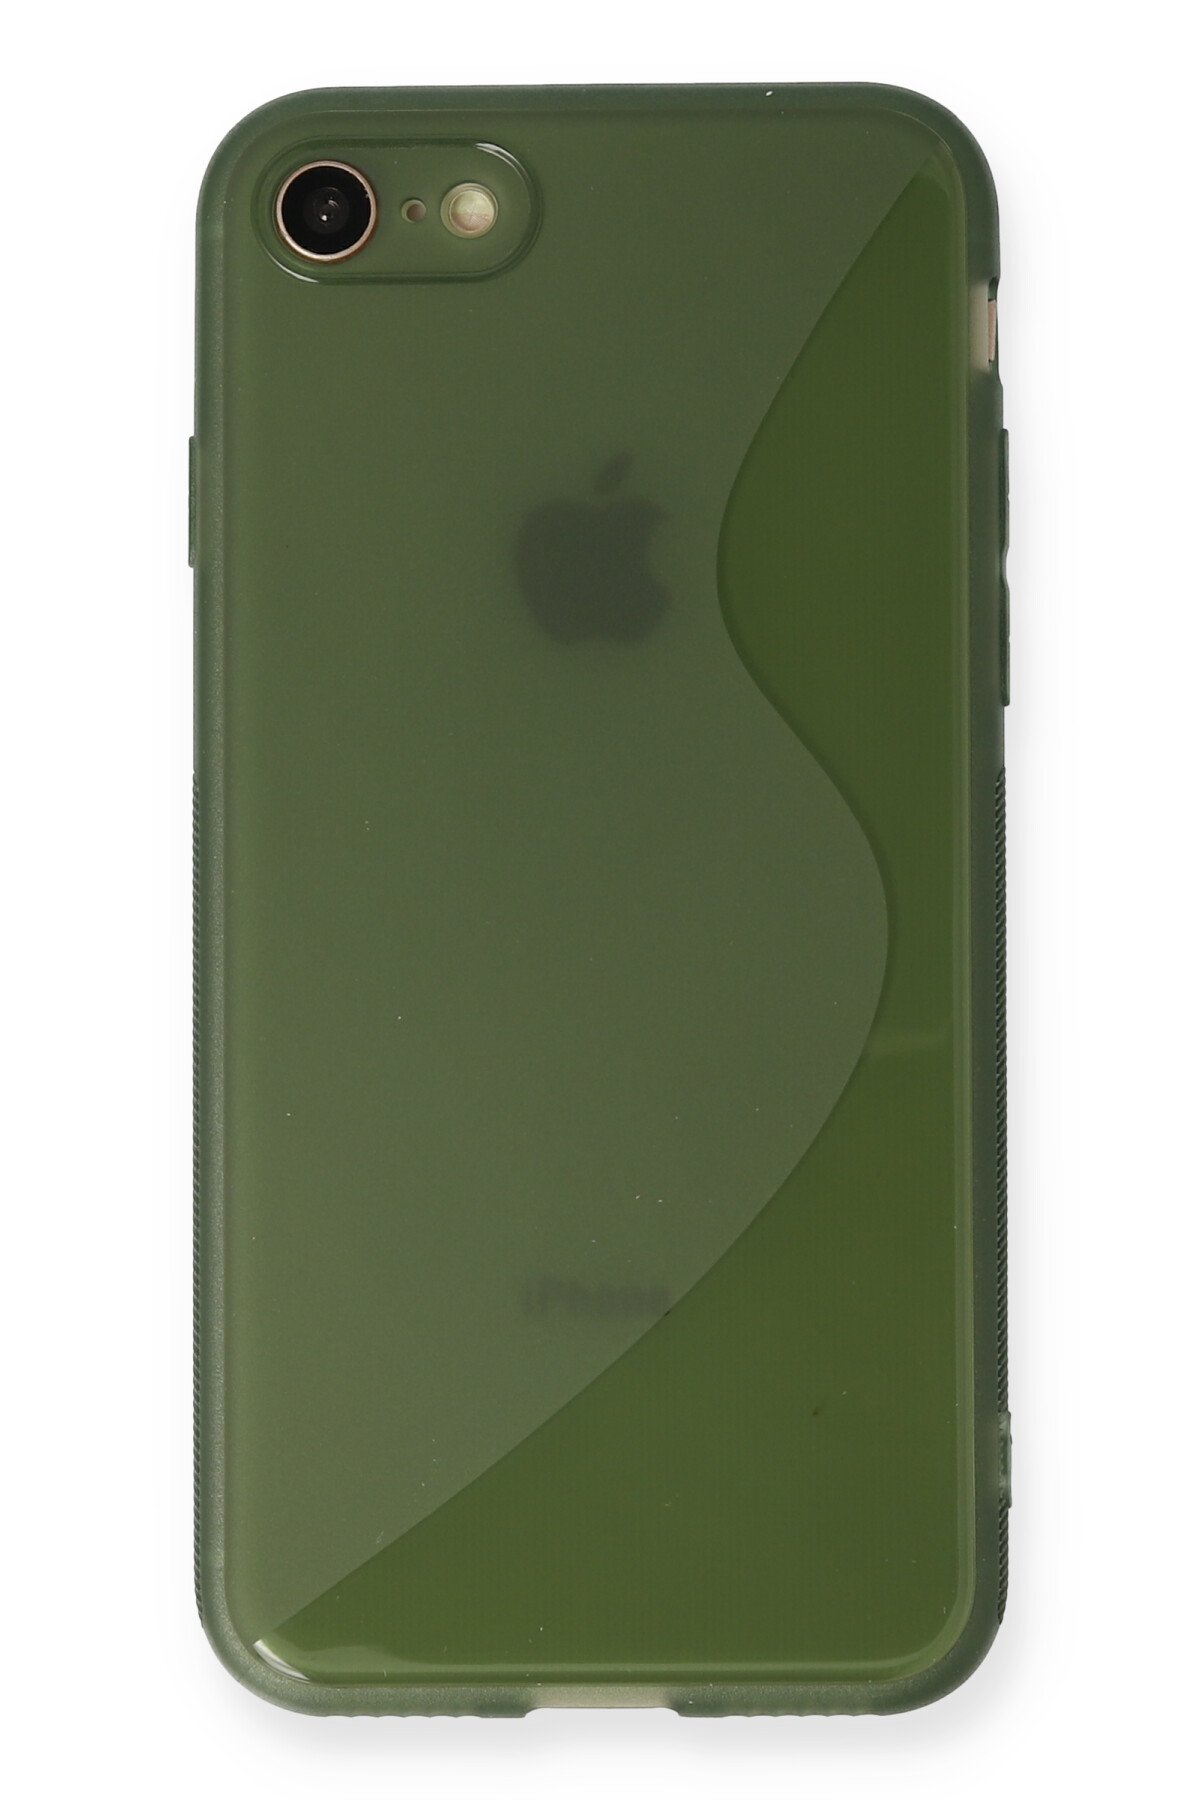 Newface iPhone SE 2020 Kılıf Pars Lens Yüzüklü Silikon - Siyah